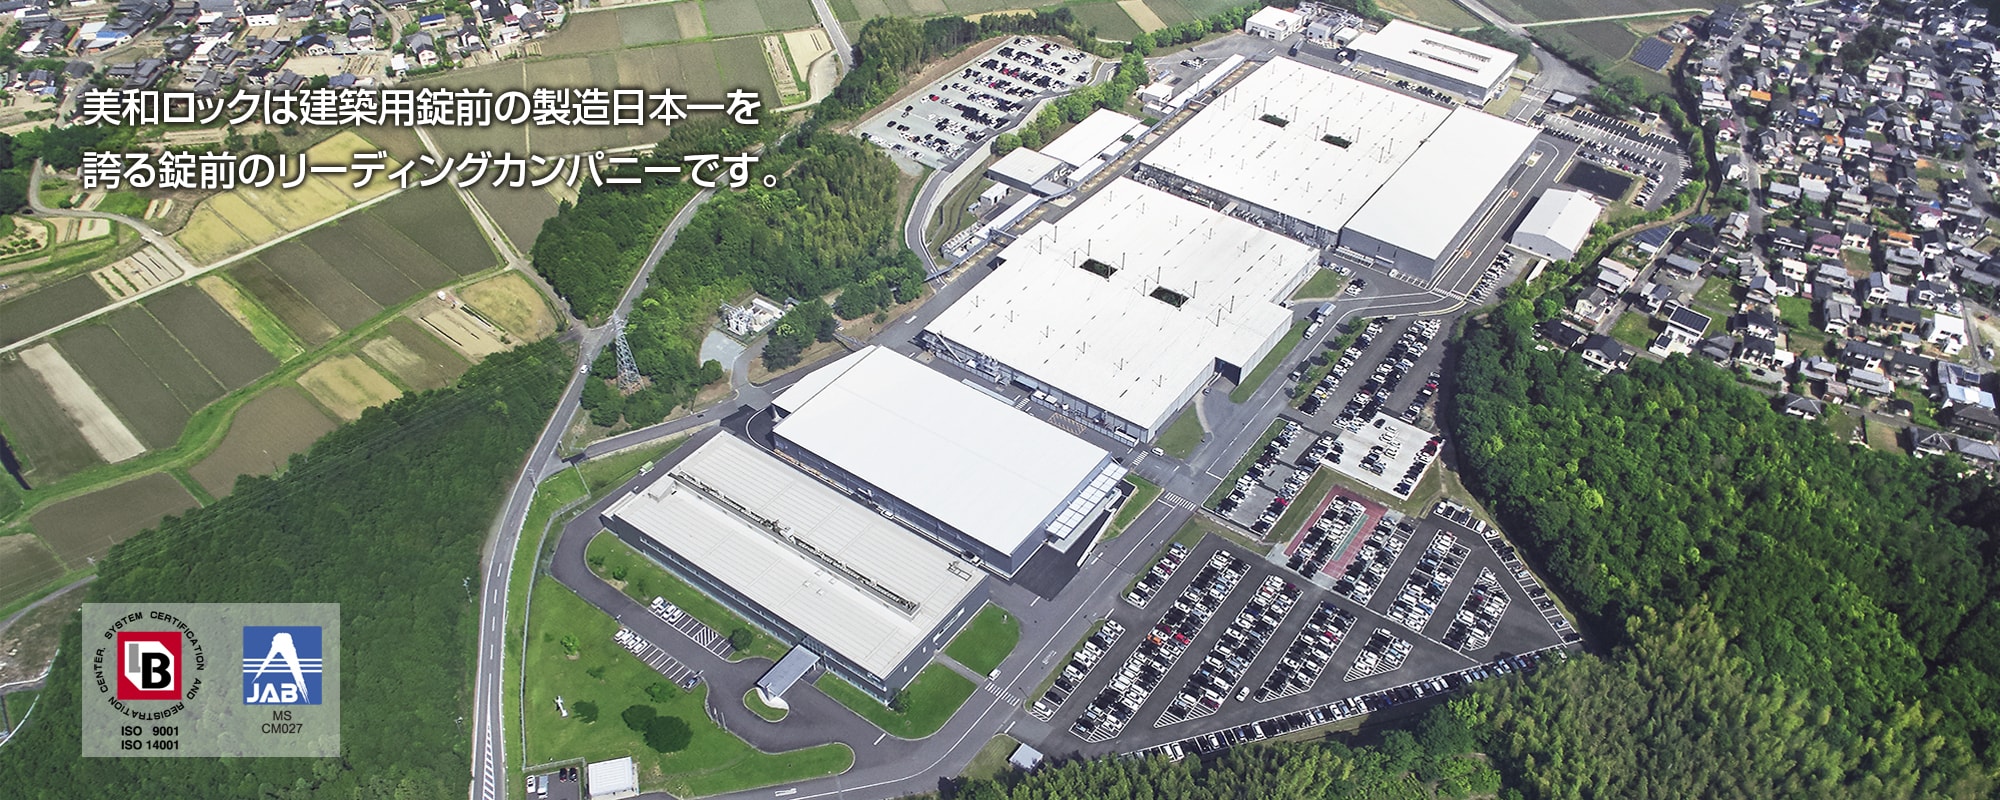 美和ロックは建築養生前の製造日本一を誇る錠前のリーディングカンパニーです。